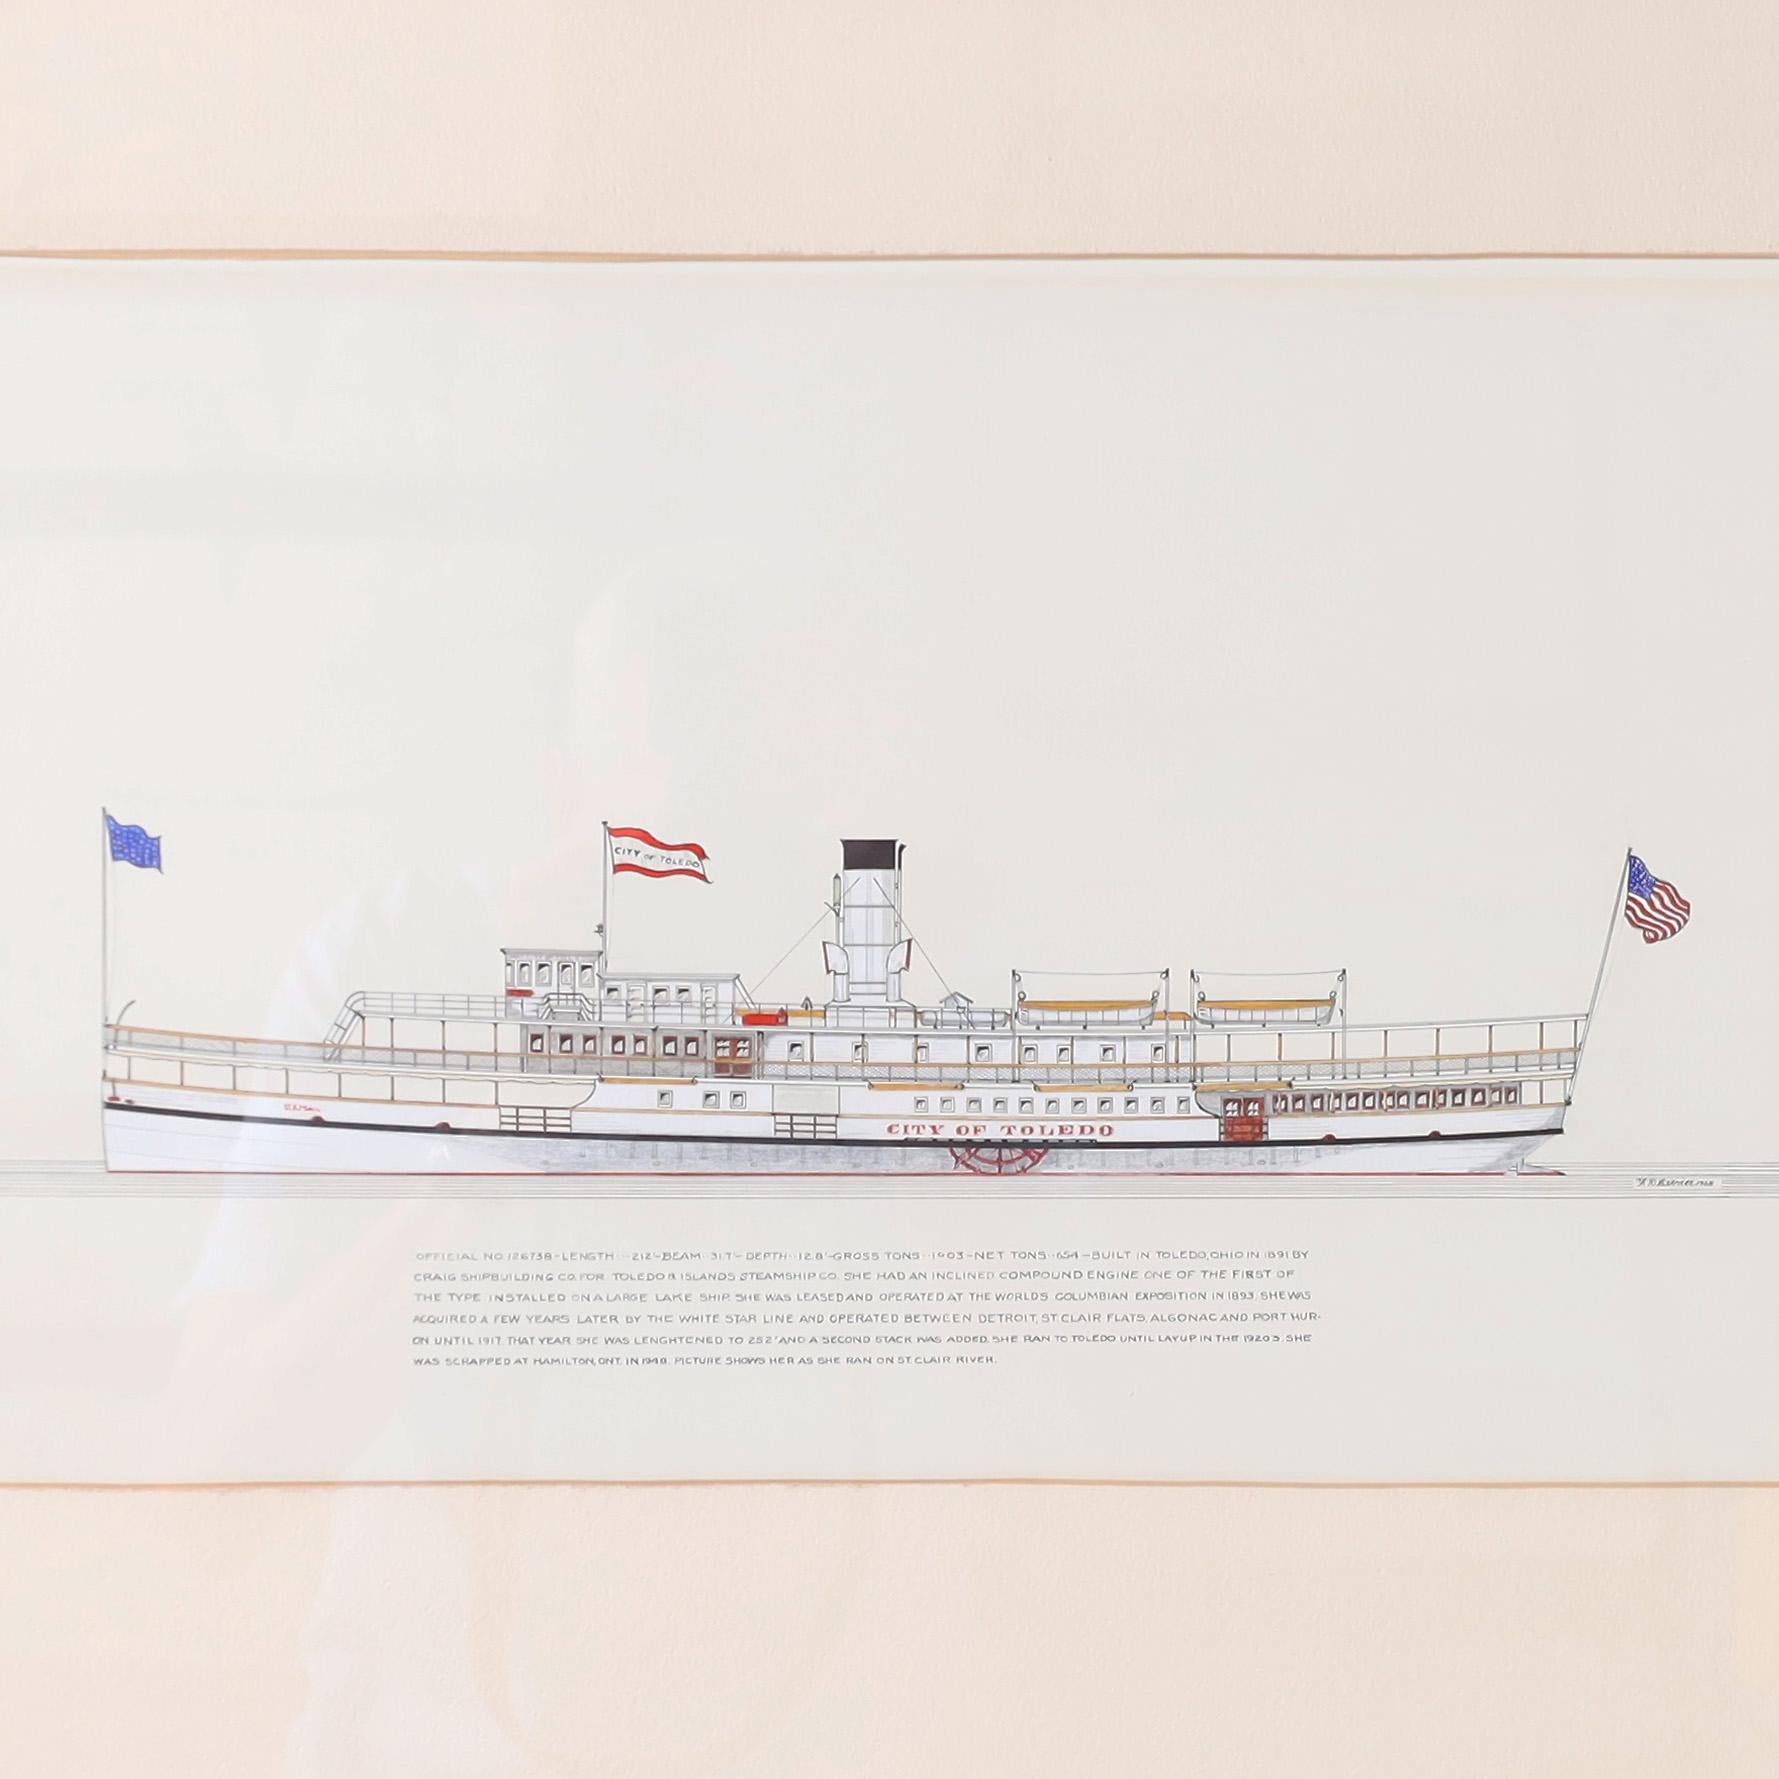 Peinture à l'encre et à la gouache sur papier d'un bateau à vapeur des Grands Lacs du XIXe siècle, exécutée dans un style précis de dessinateur et signée par le célèbre artiste américain Frank Crevier, encadrée et présentée sous verre. Comme le